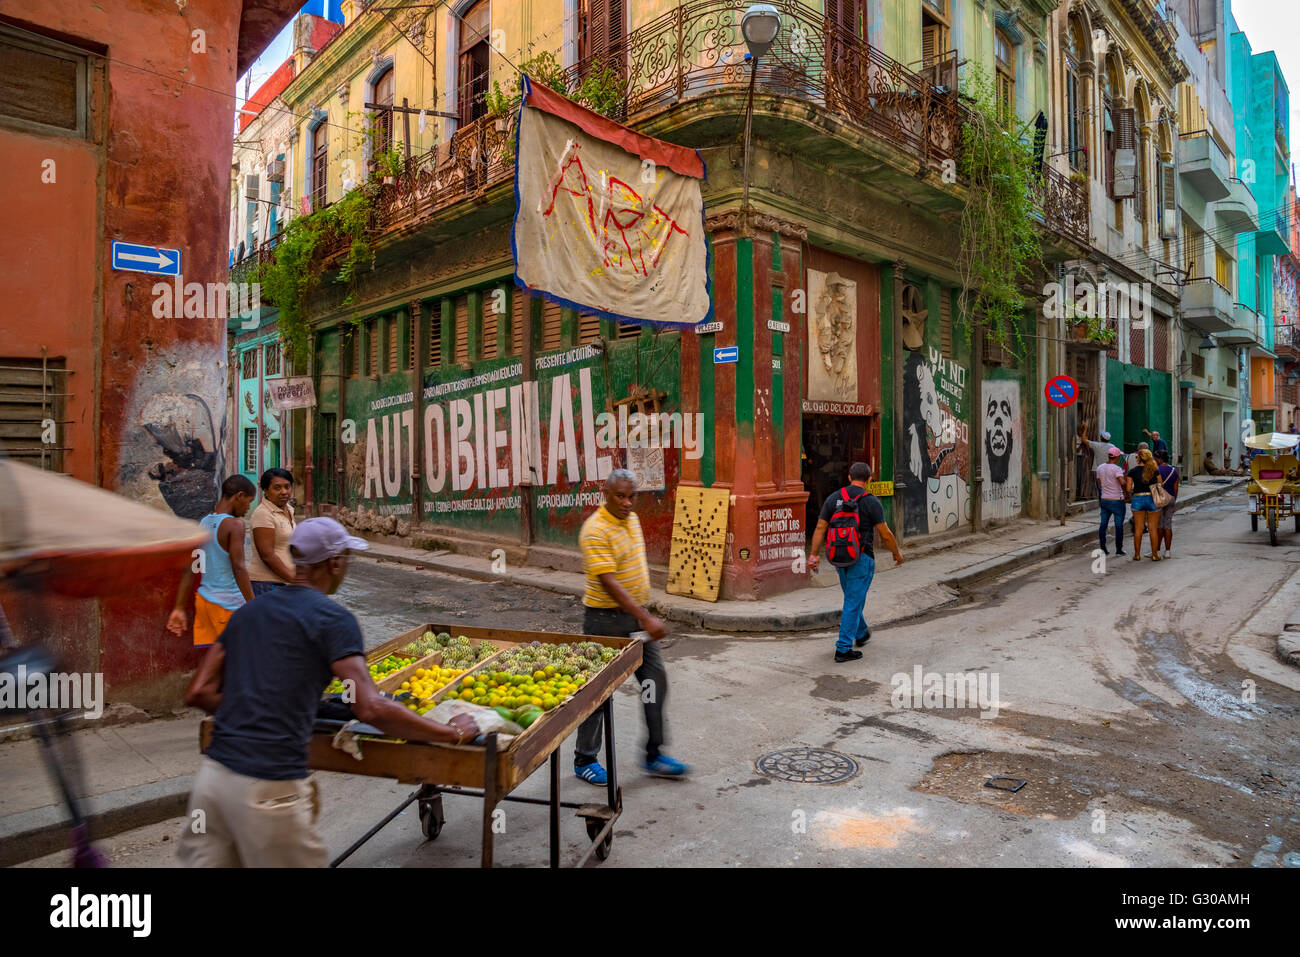 La Habana Vieja (la vieille Havane), site du patrimoine mondial de l'UNESCO, La Havane, Cuba, Antilles, Caraïbes, Amérique Centrale Banque D'Images